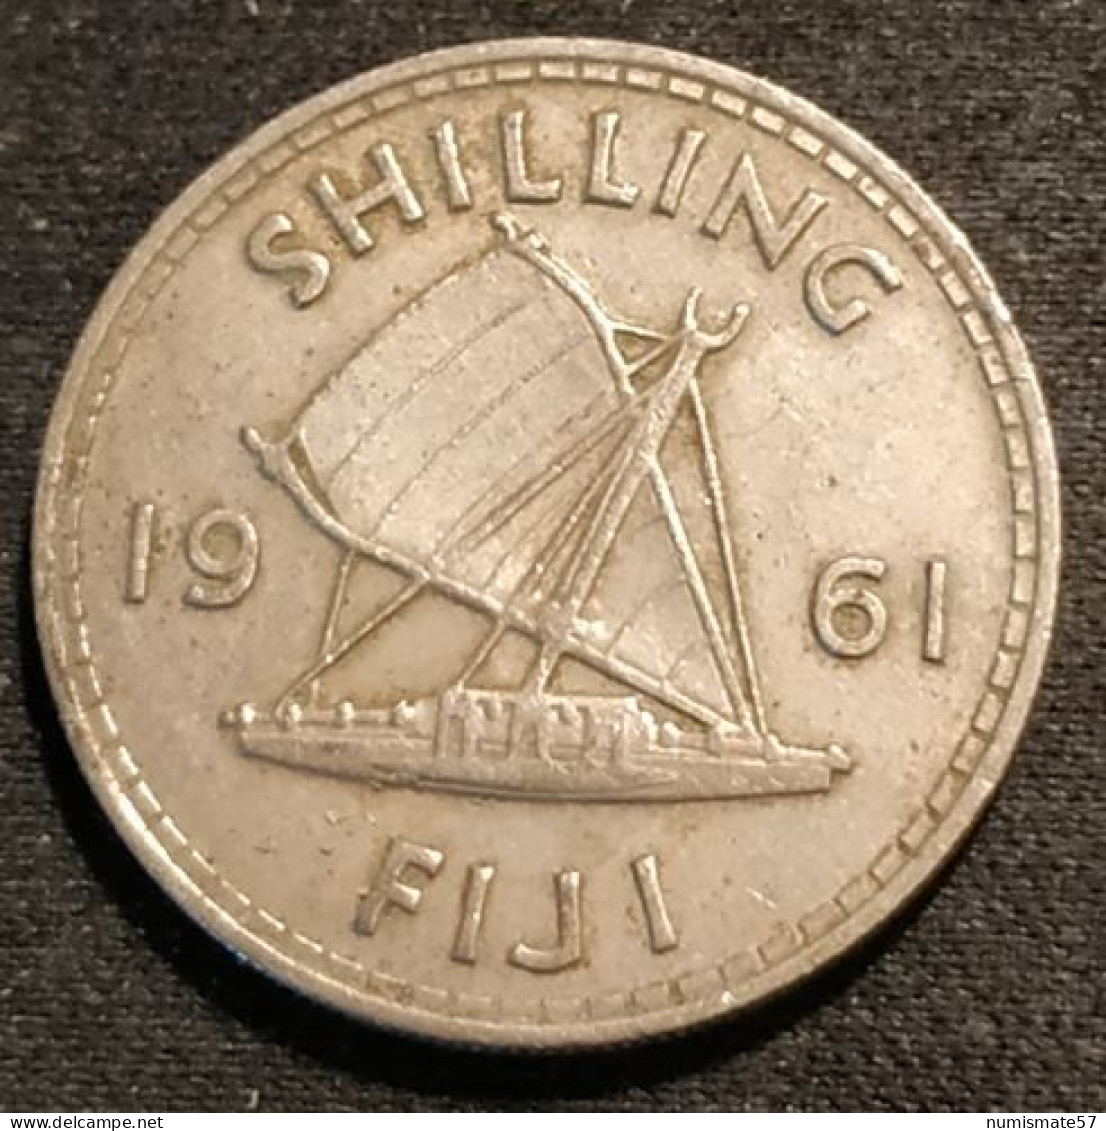 RARE - FIDJI - FIJI - 1 SHILLING 1961 - Elizabeth II - 1re Effigie - KM 23 - Fiji